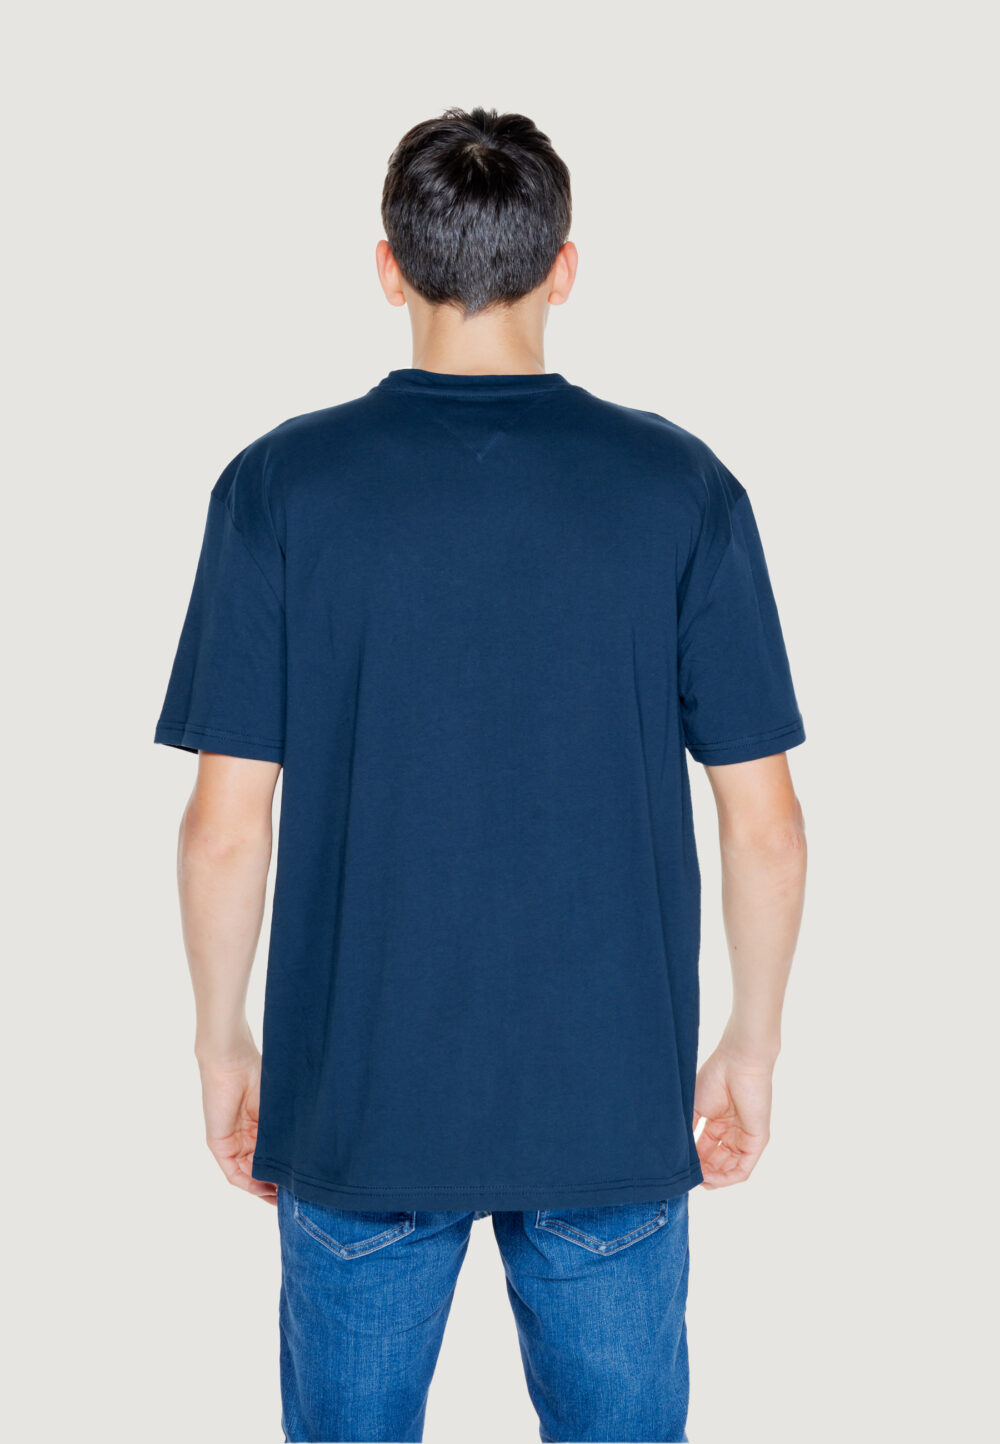 T-shirt Tommy Hilfiger Jeans TJM REG RWB DNA TEE Blue scuro - Foto 3